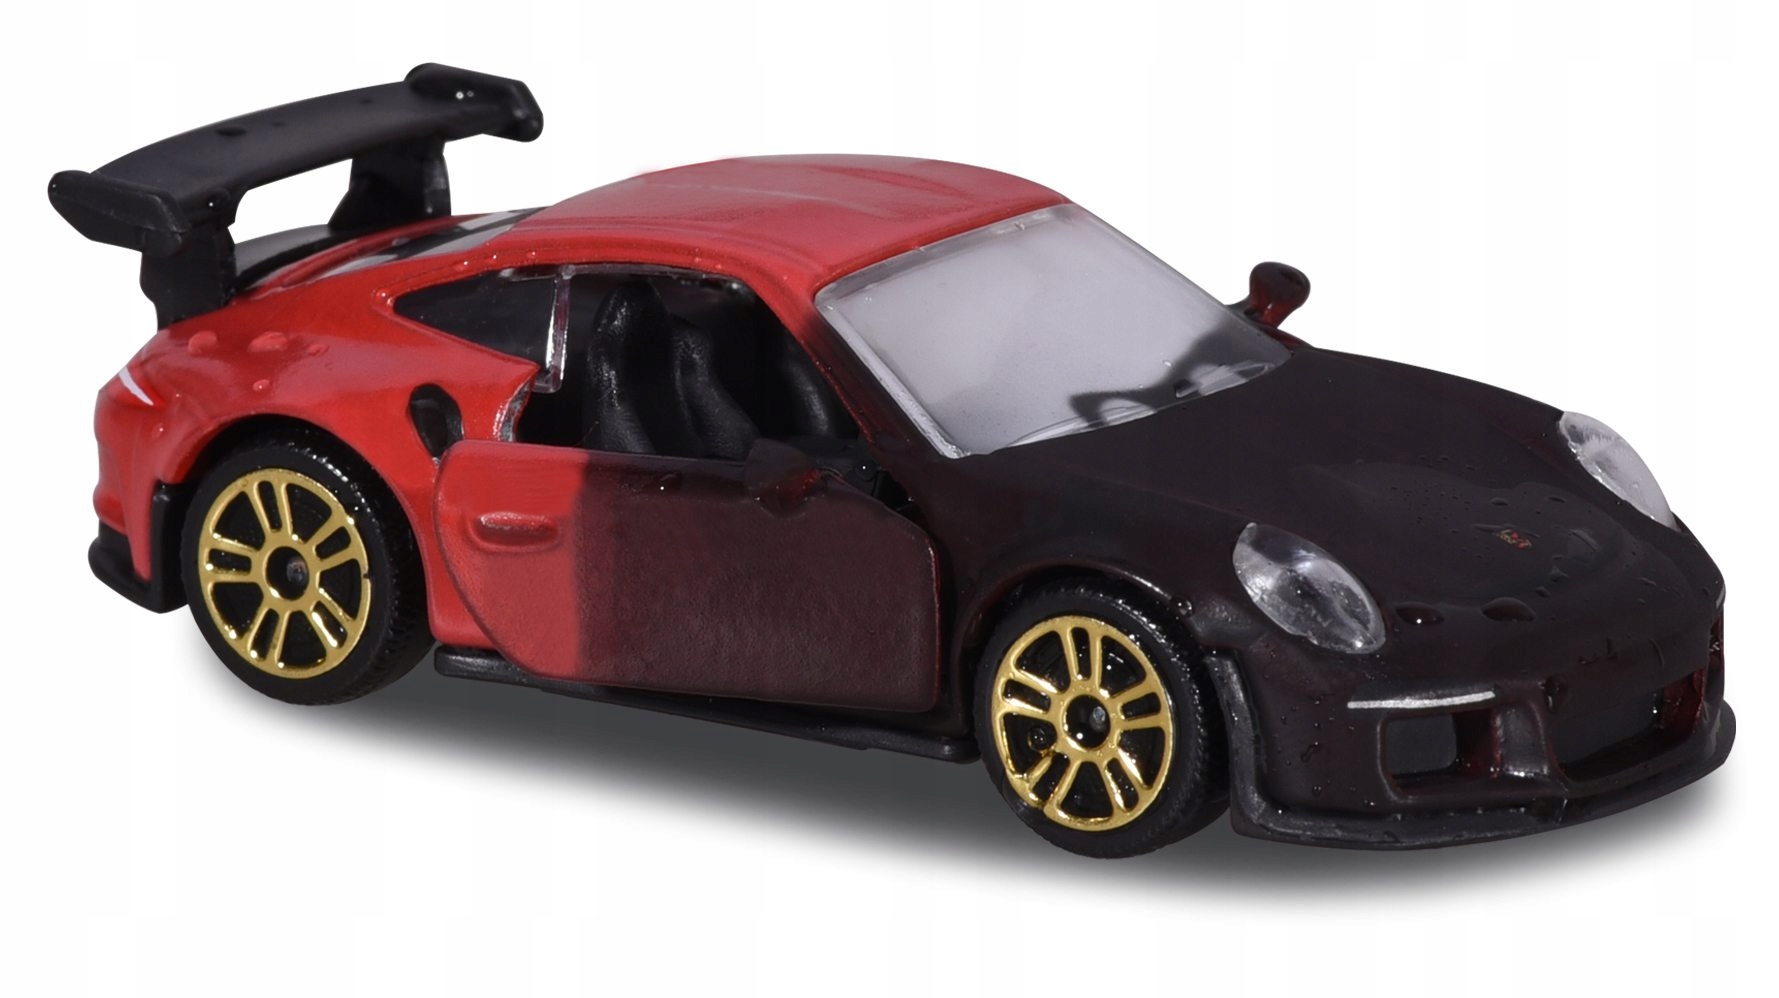 Miniature majorette Porsche 911 GT3 RS color changers - Majorette